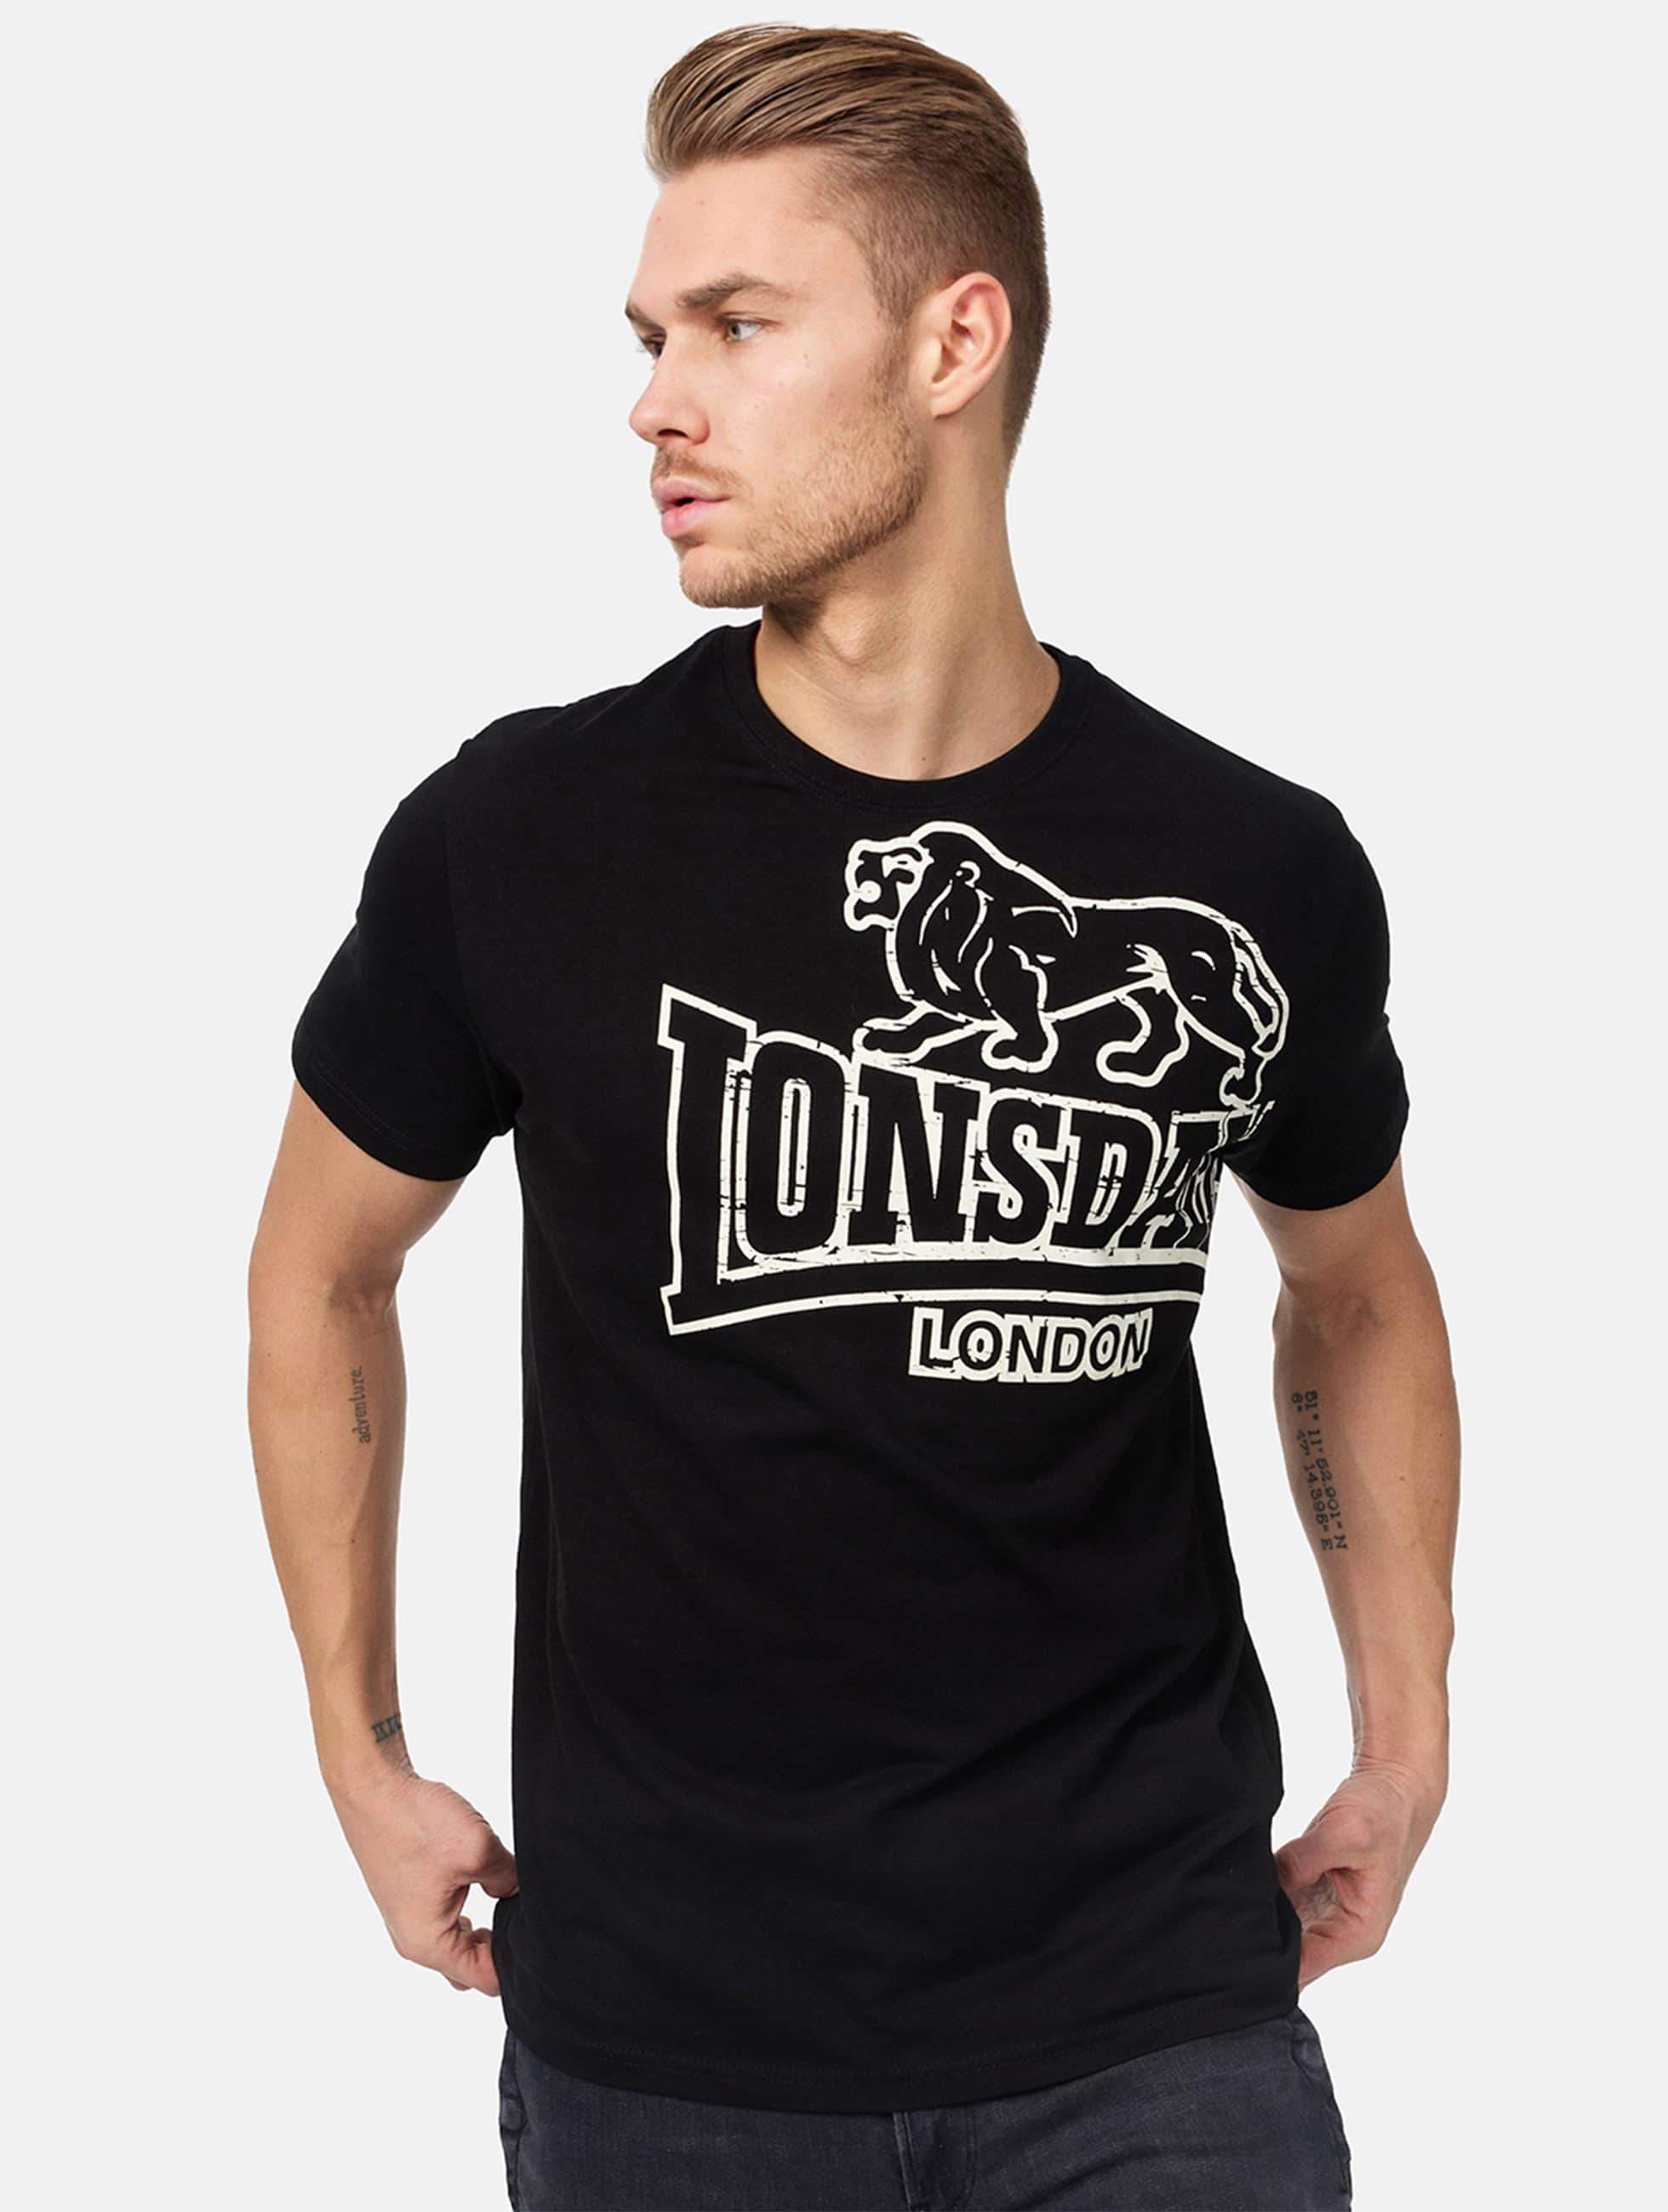 doos Pech Christian Lonsdale London bovenstuk / t-shirt Langsett in zwart 172451